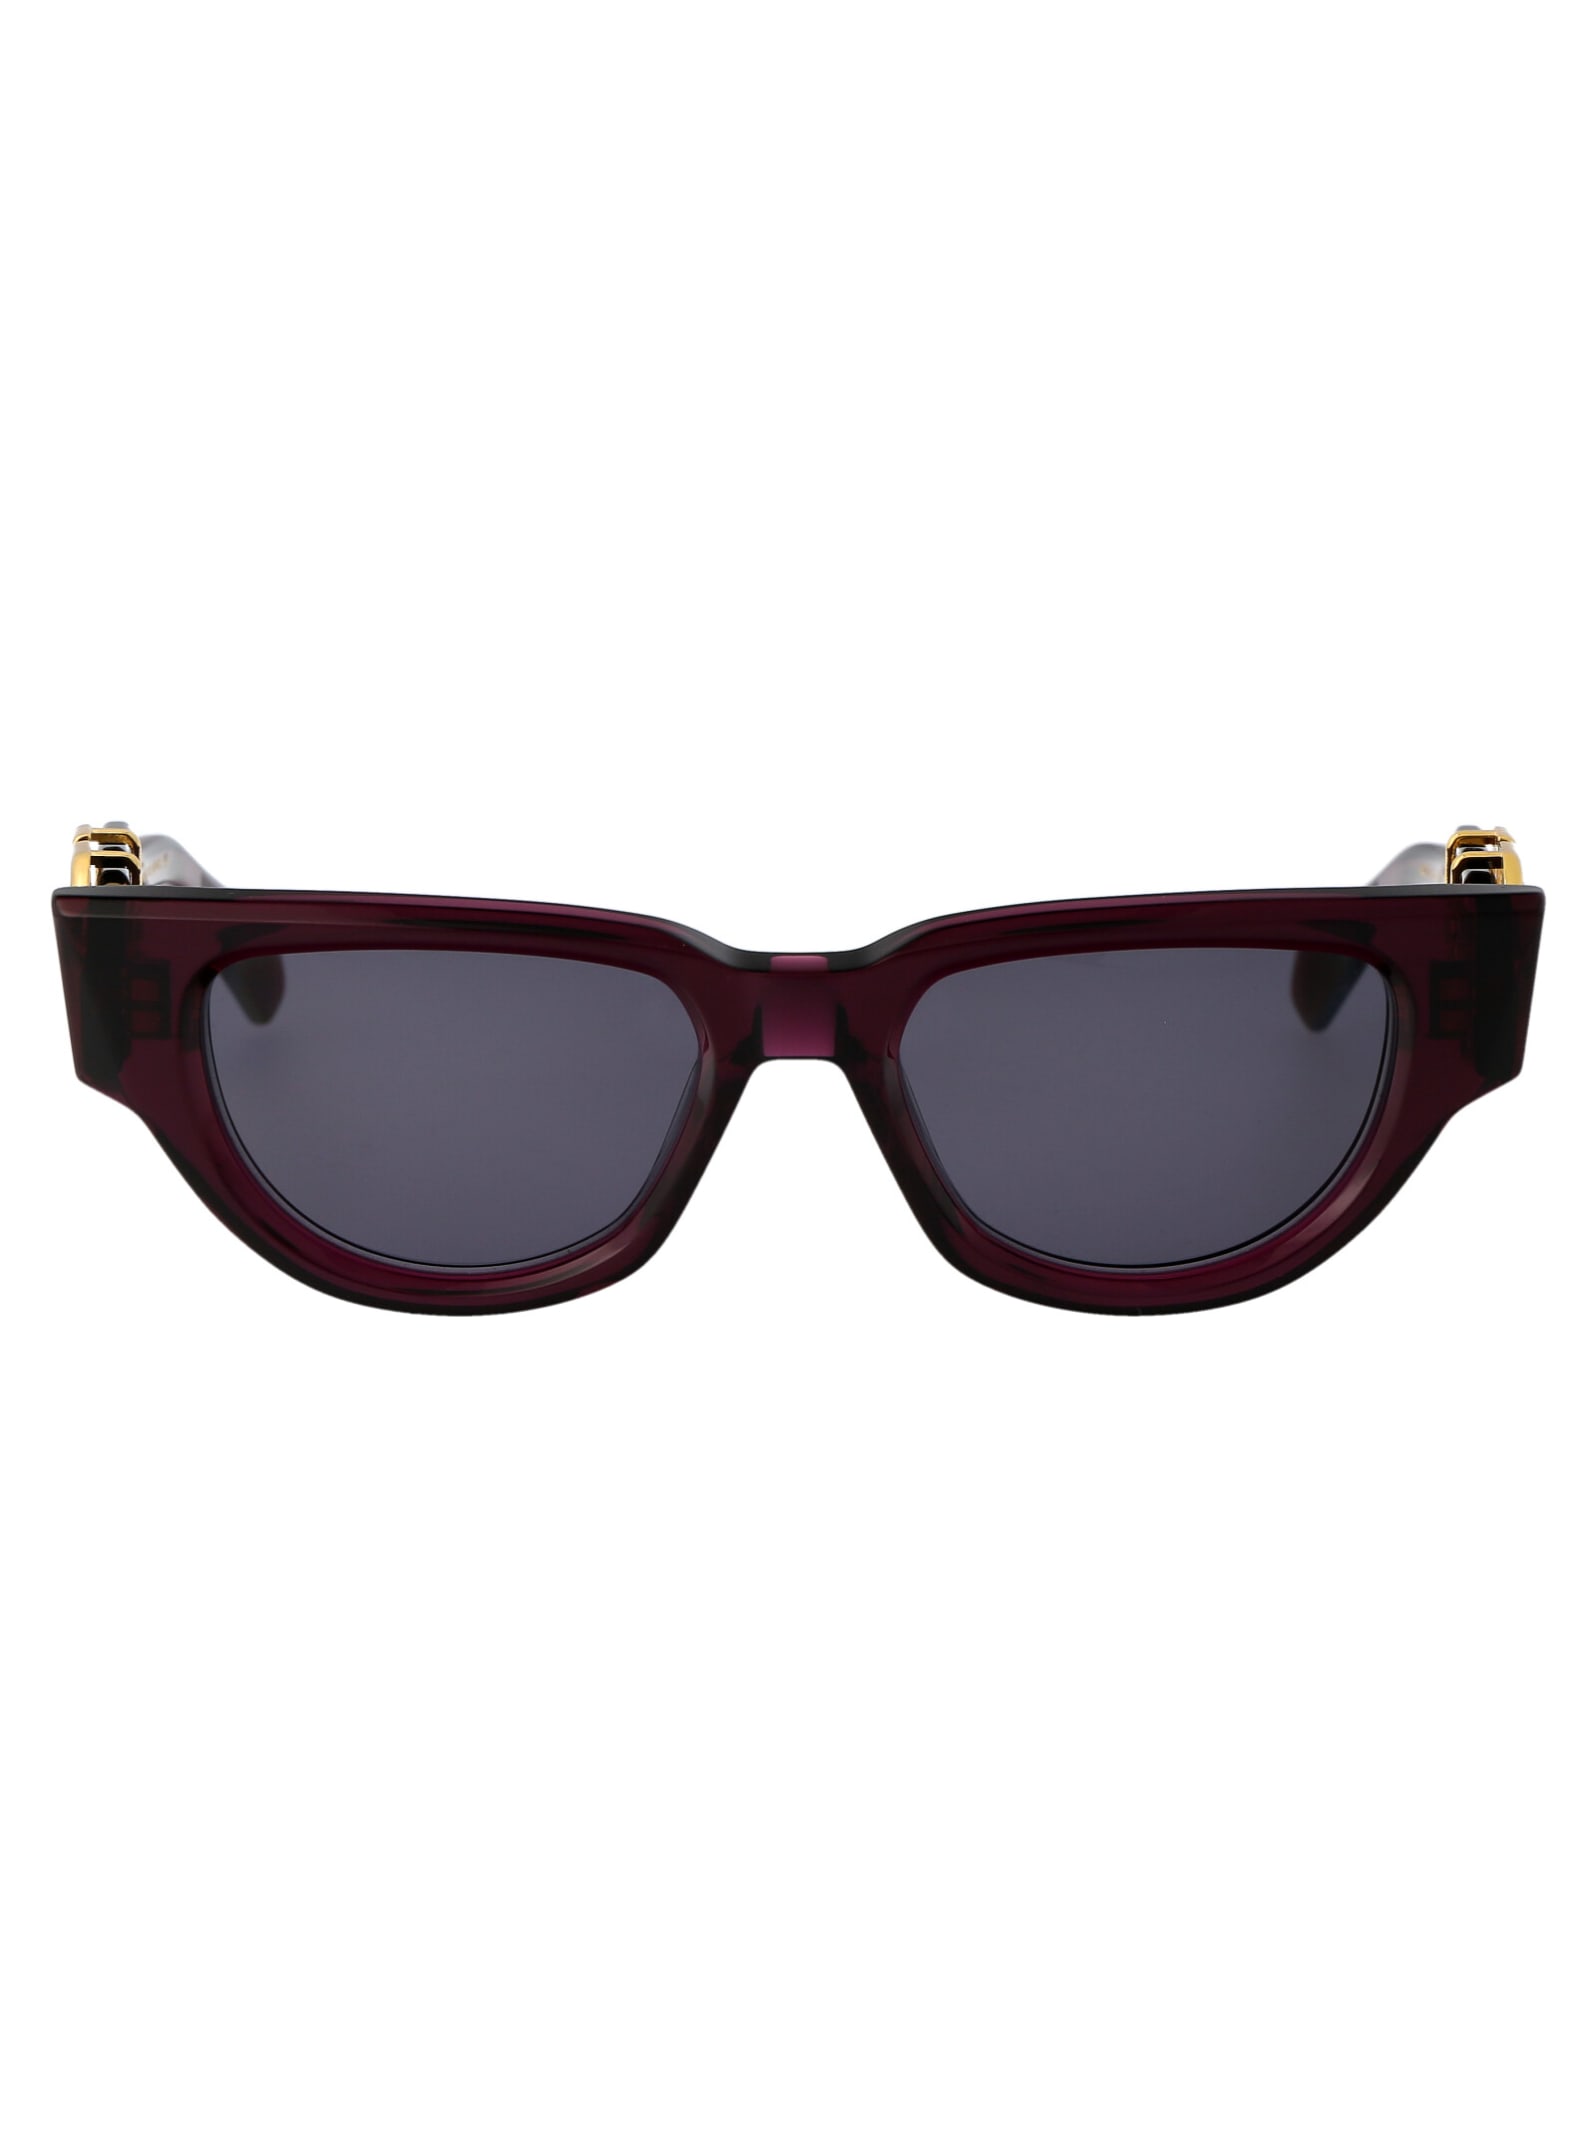 Shop Valentino V - Due Sunglasses In 103d Pur - Gld